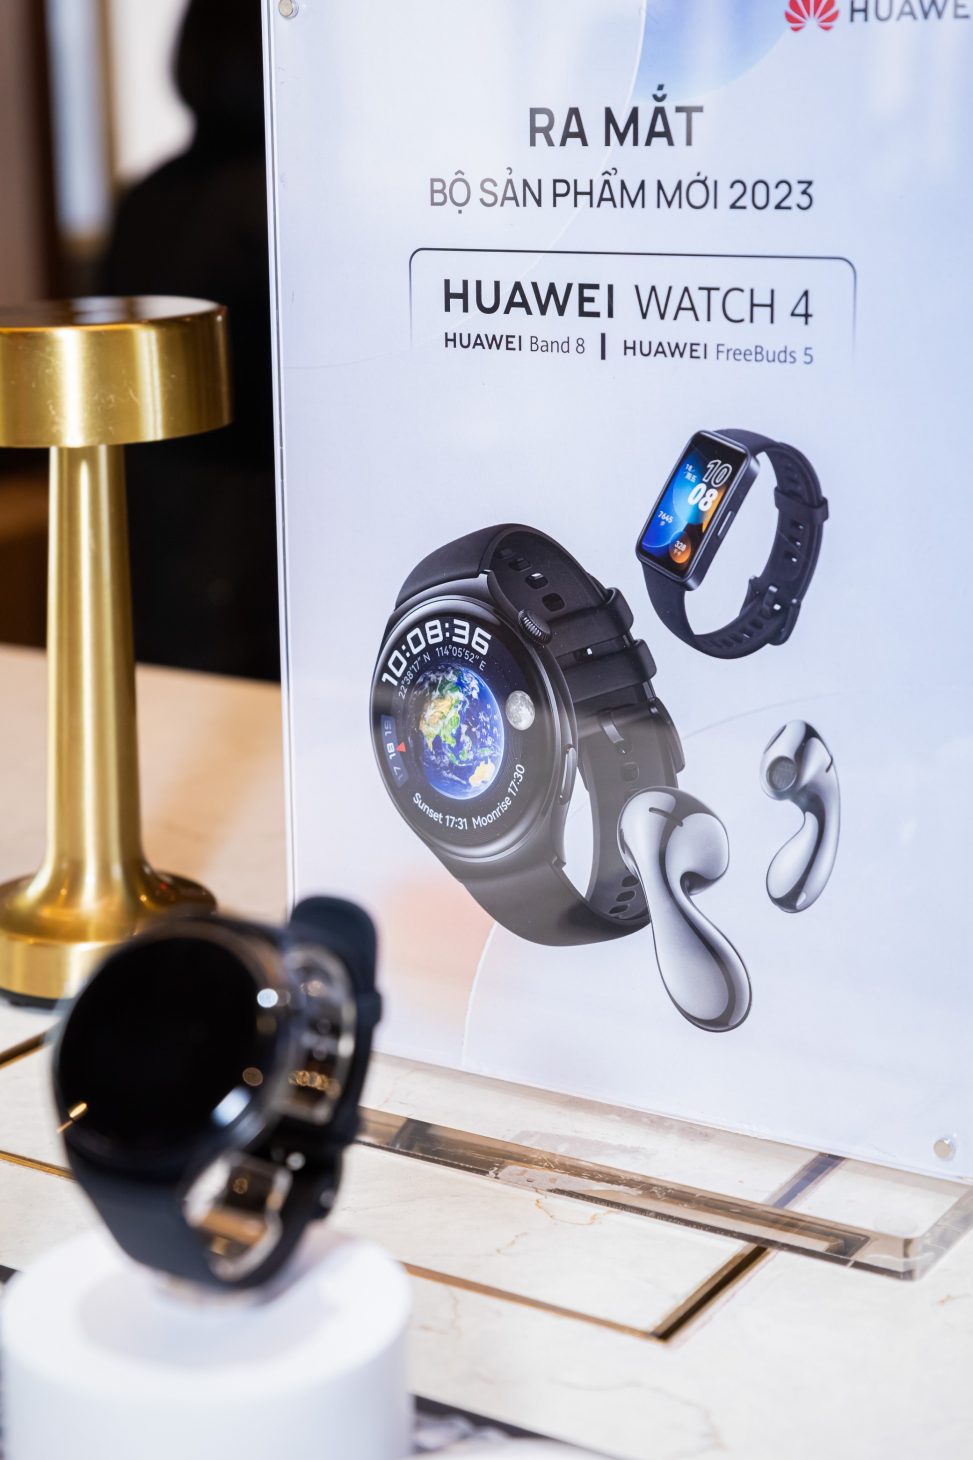 Ra Huawei Watch 4, Huawei Freebuds 5 và Huawei Band 8, Huawei phủ sóng hoạt động hè - HUAWEI RAMATSANPHAM 2023 8